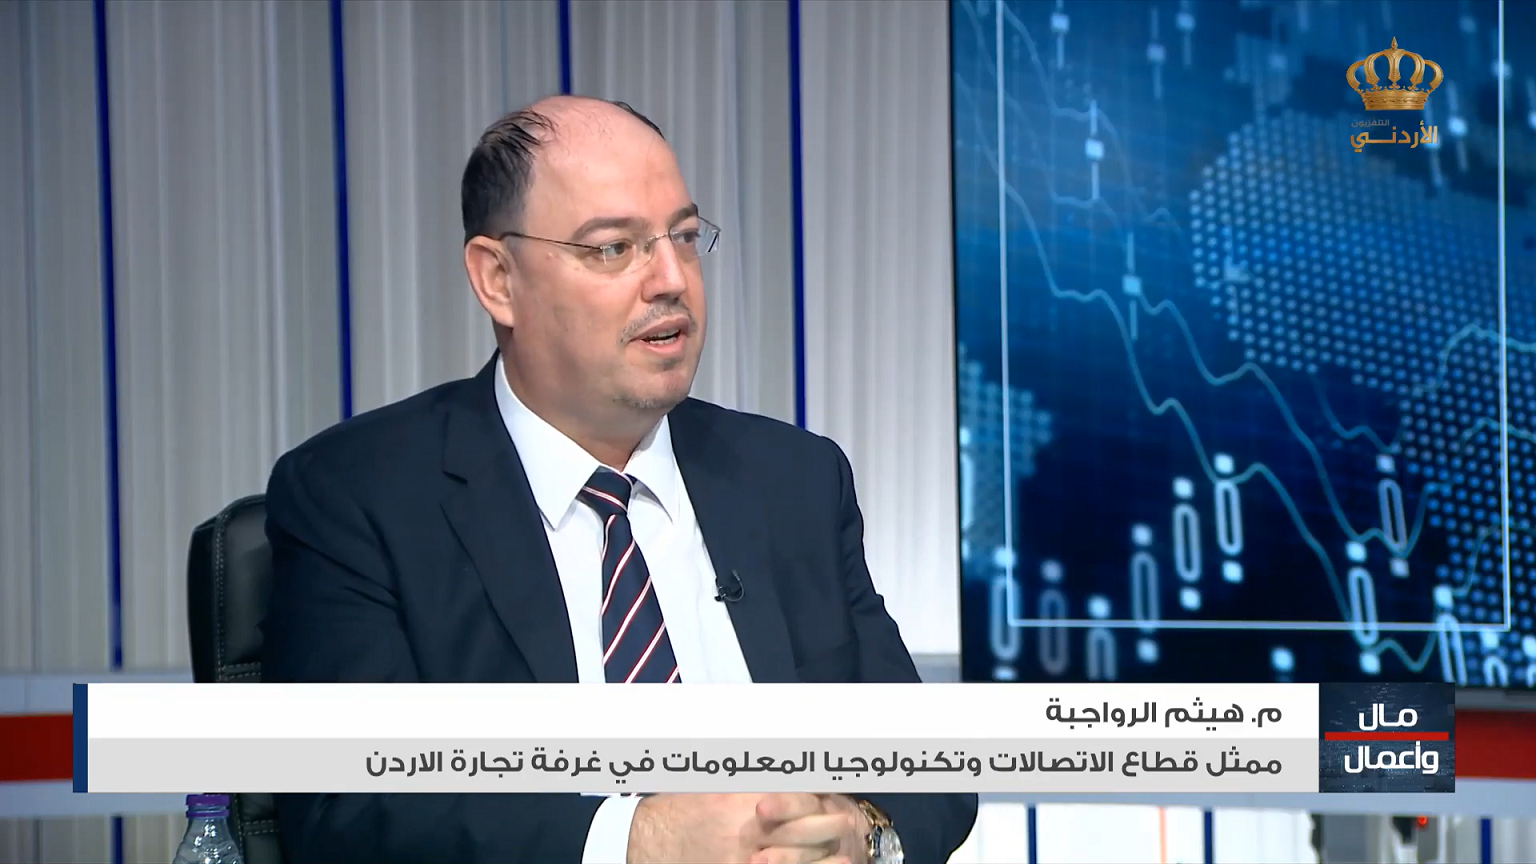 المهندس هيثم الرواجبة ممثل قطاع الاتصالات و تكنولوجيا المعلومات في لقاء خاص عبر التلفزيون الأردني